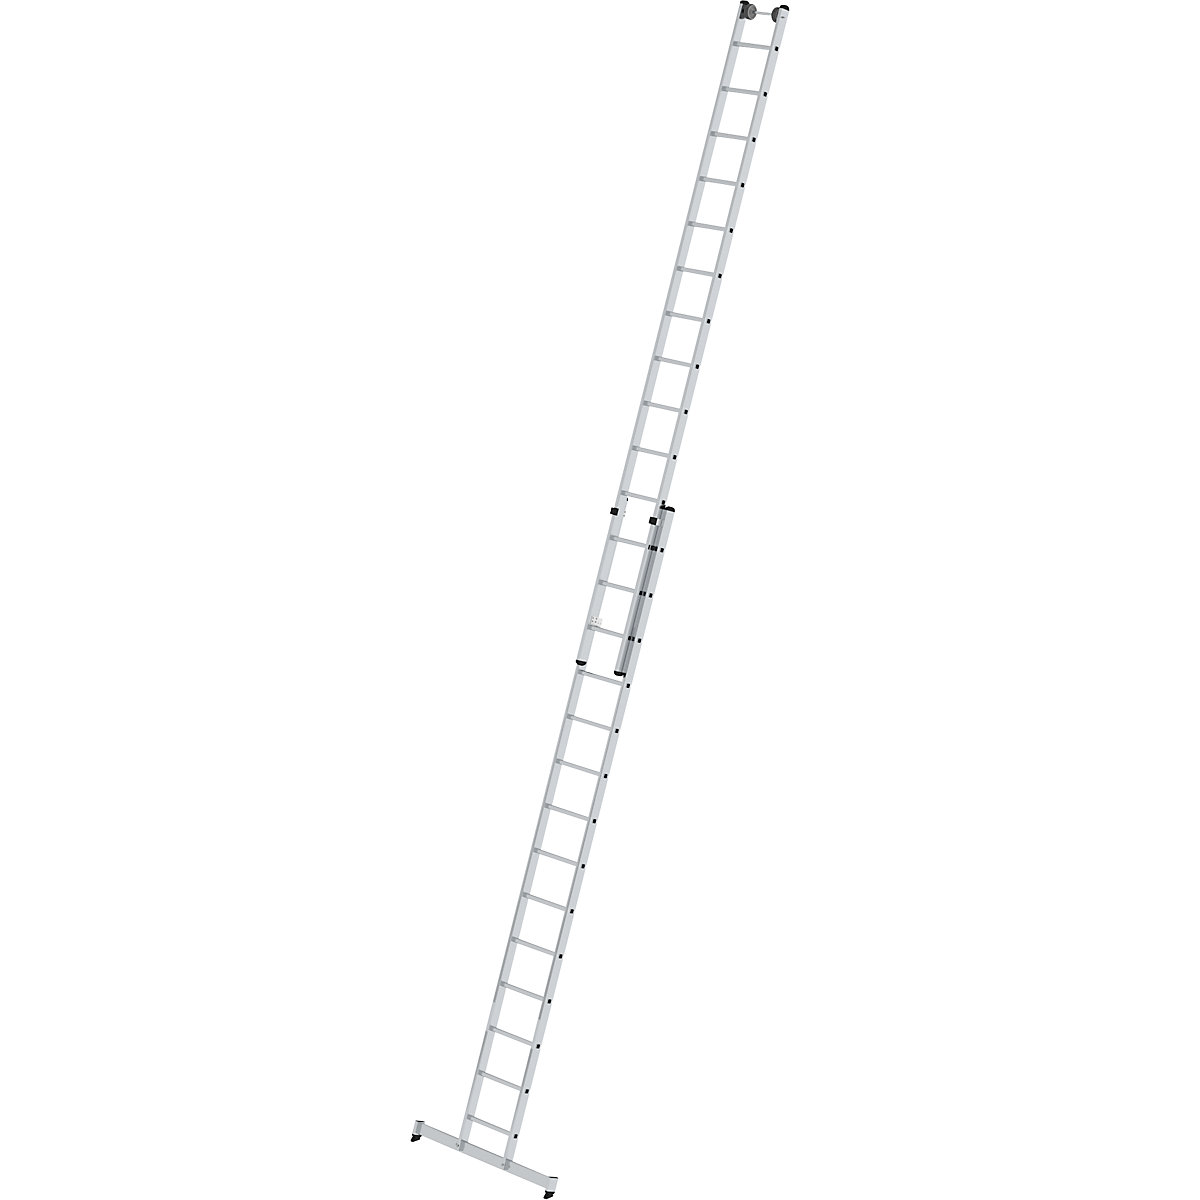 Výškově přestavitelný opěrný žebřík – MUNK, posuvný žebřík, 2dílný, 2 x 14 příčlí, s příčníkem nivello®-10